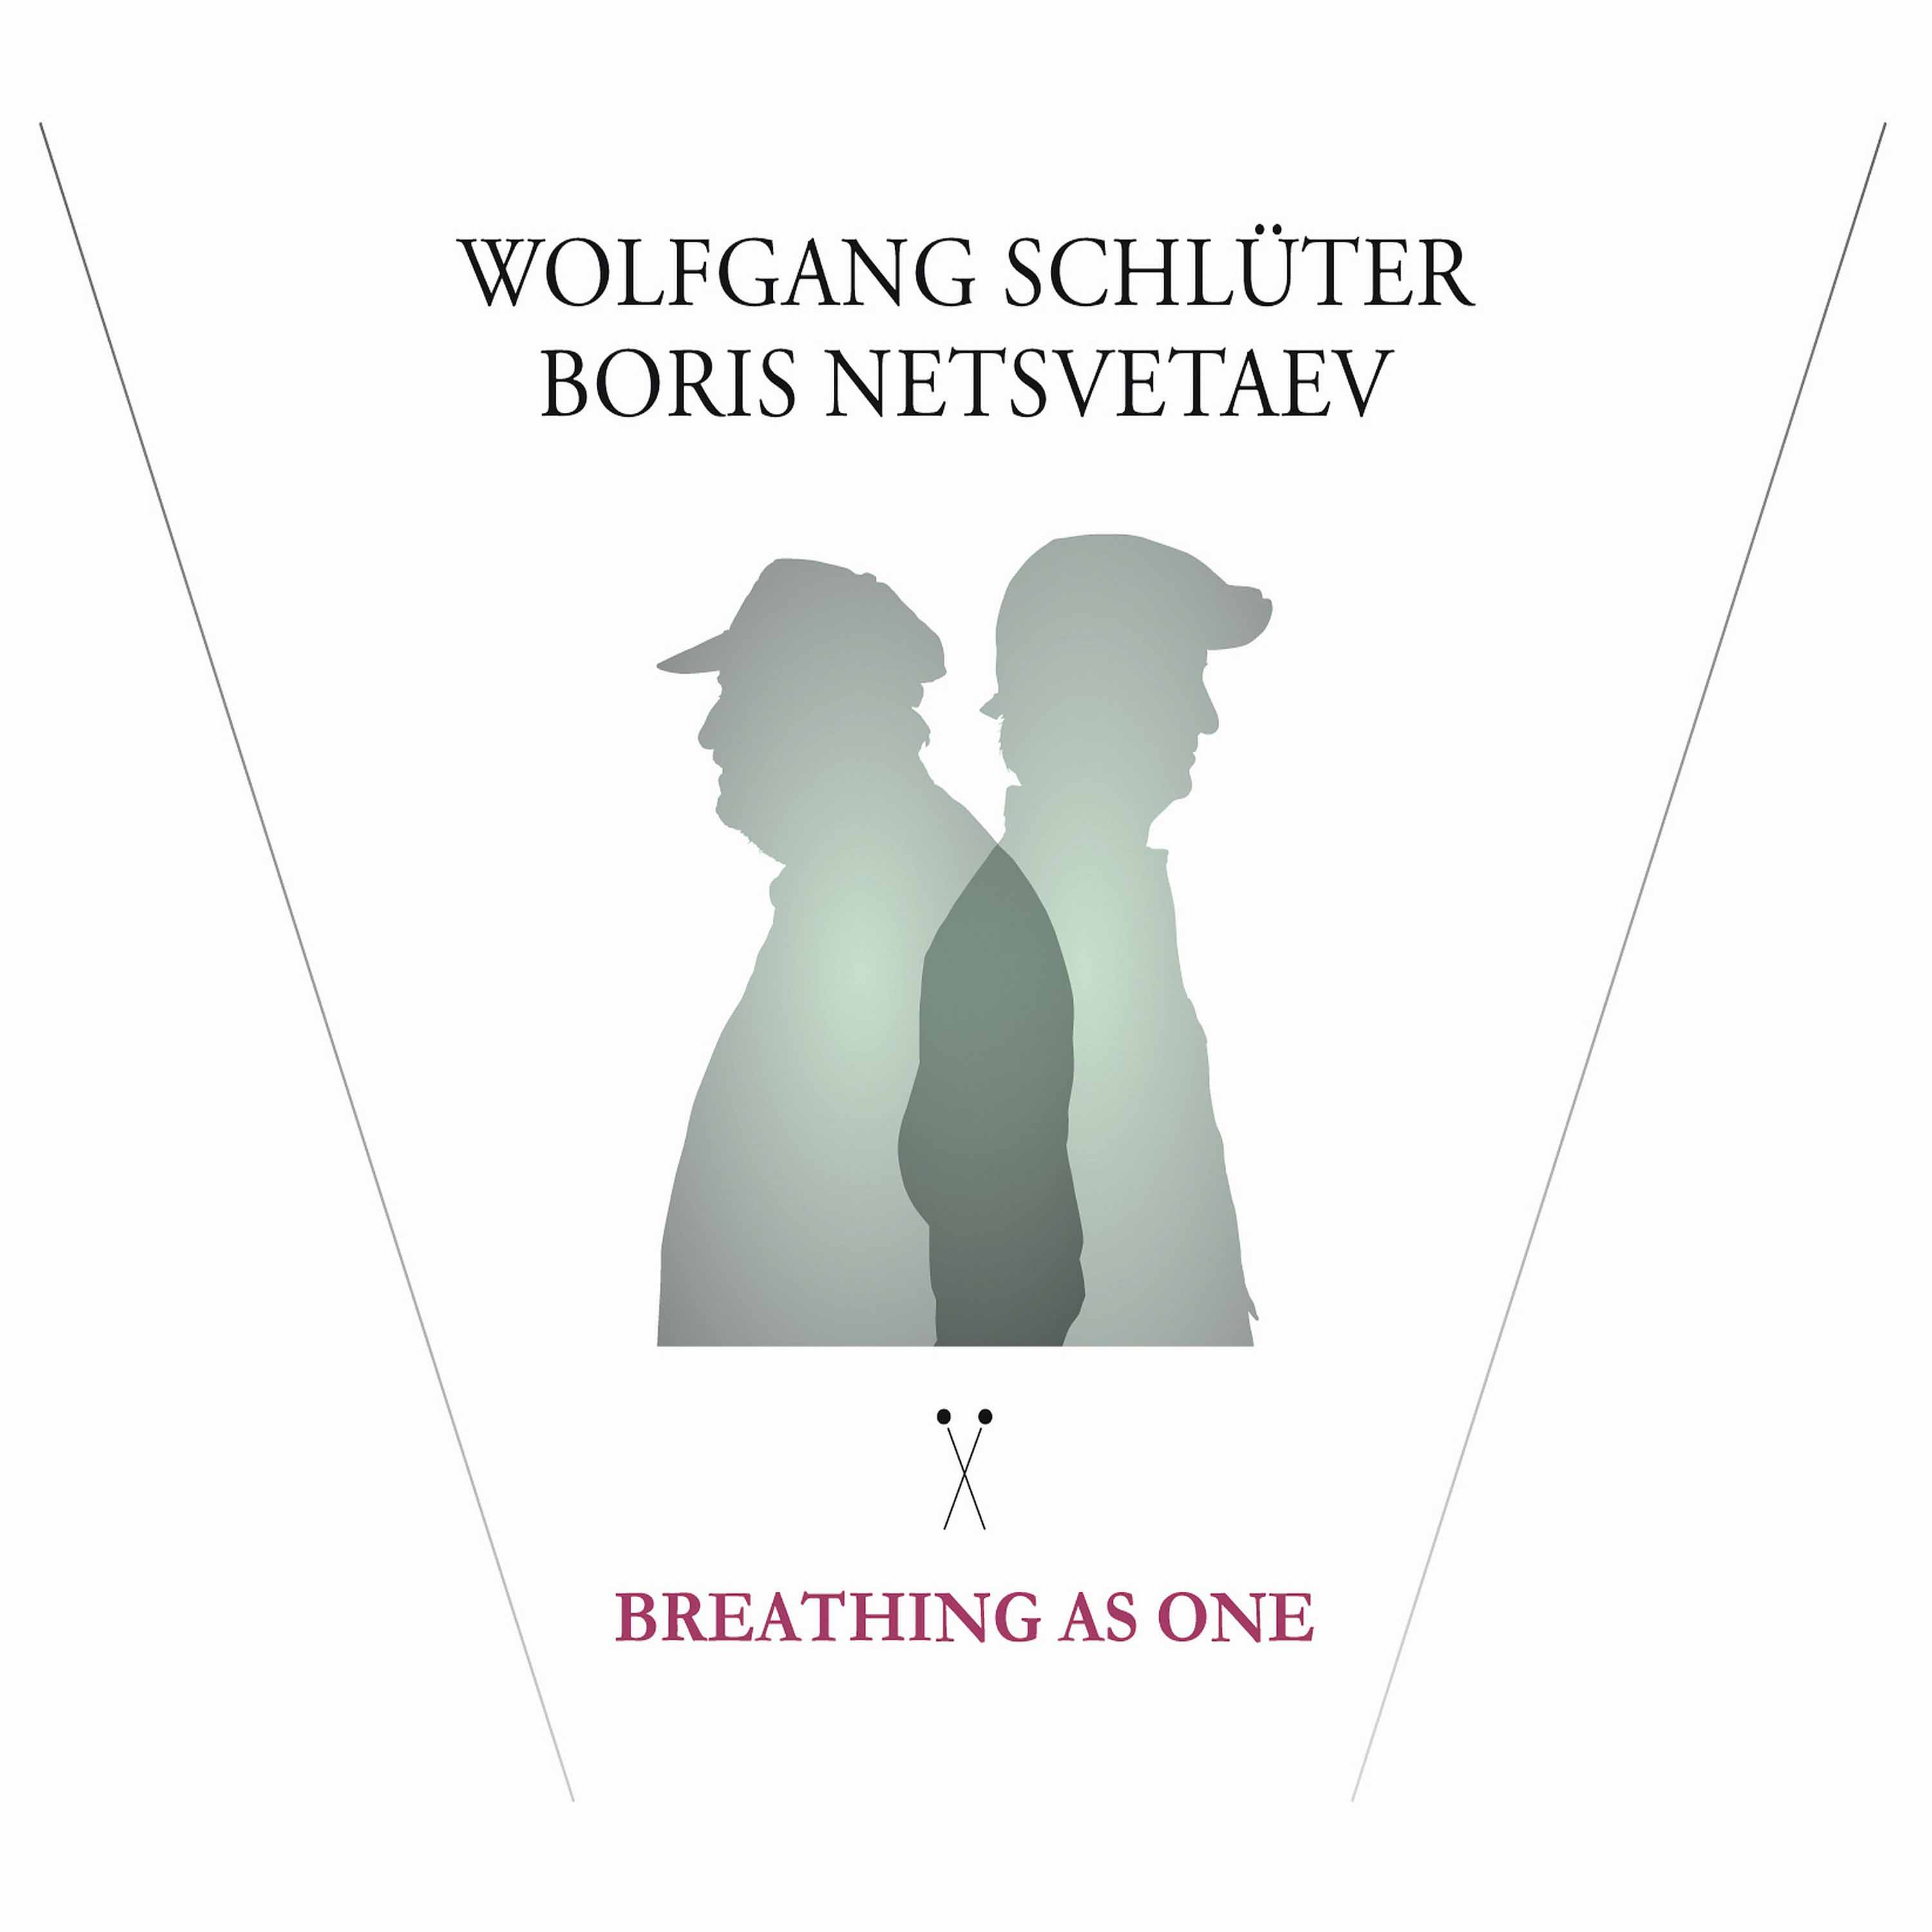 Wolfgang Schluter, Boris Netsvetaev – Breathing As One (2016) [HDTracks FLAC 24bit/96kHz]